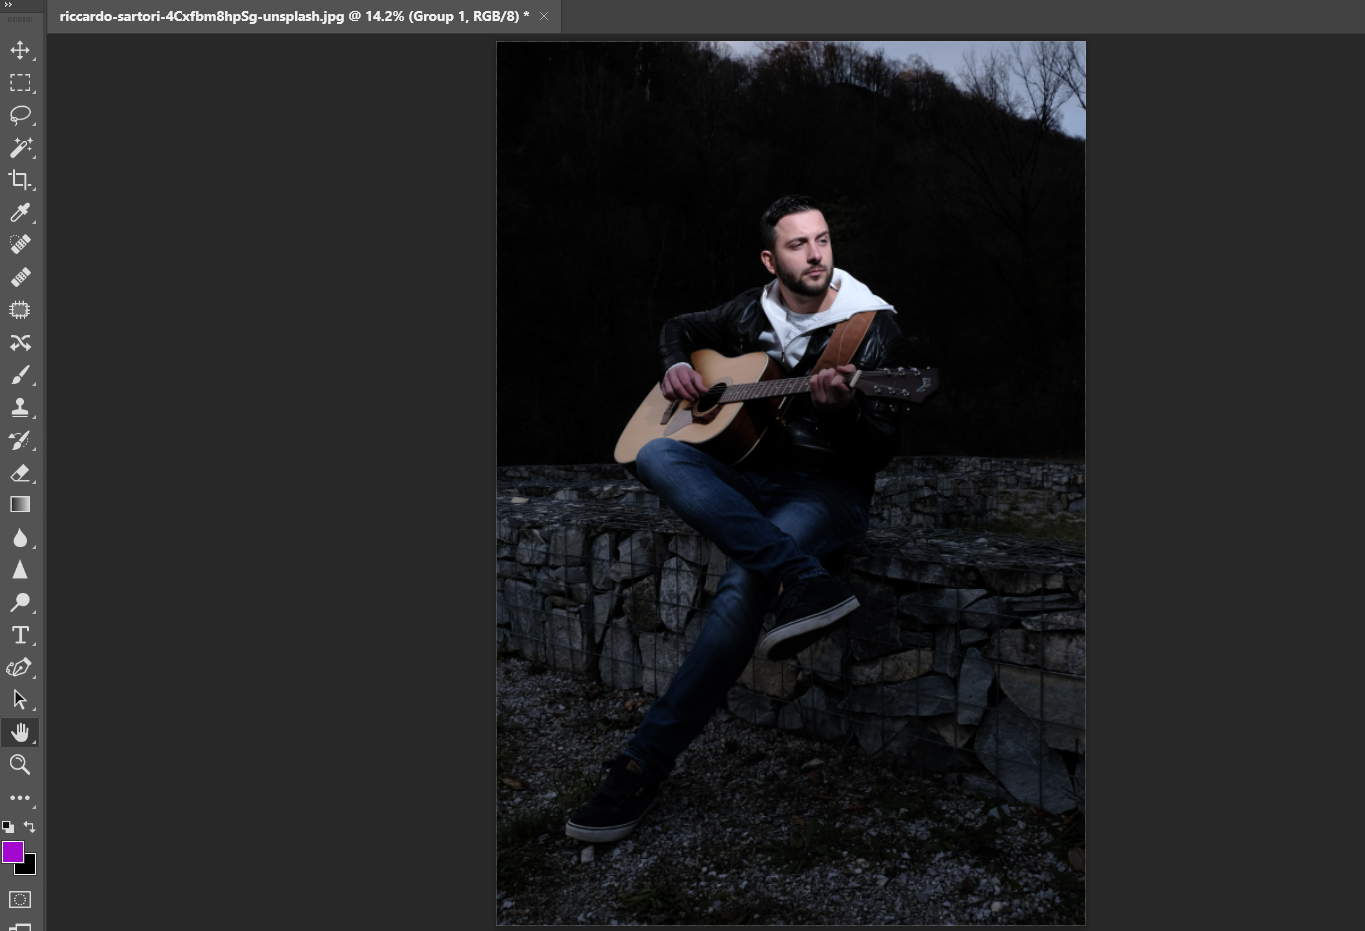 8 Guitarist - Come creare facilmente effetti di luce in Photoshop utilizzando la modalità di fusione Sovrapposizione